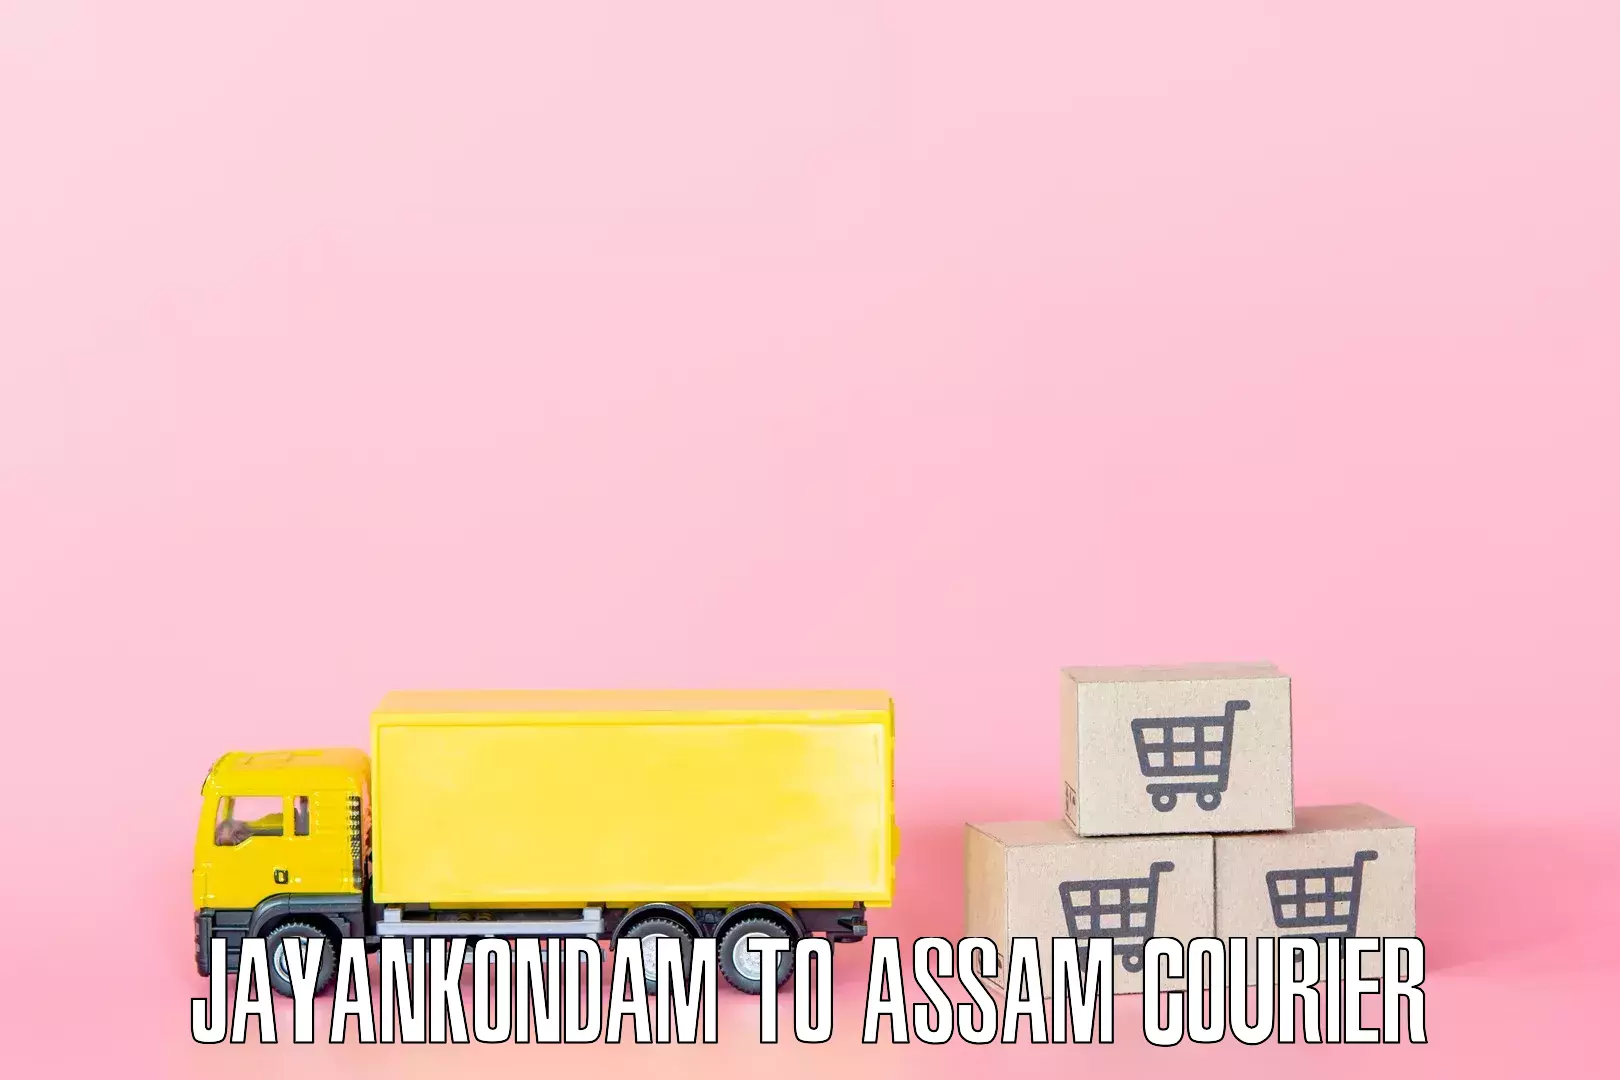 Dependable furniture transport Jayankondam to Lala Assam